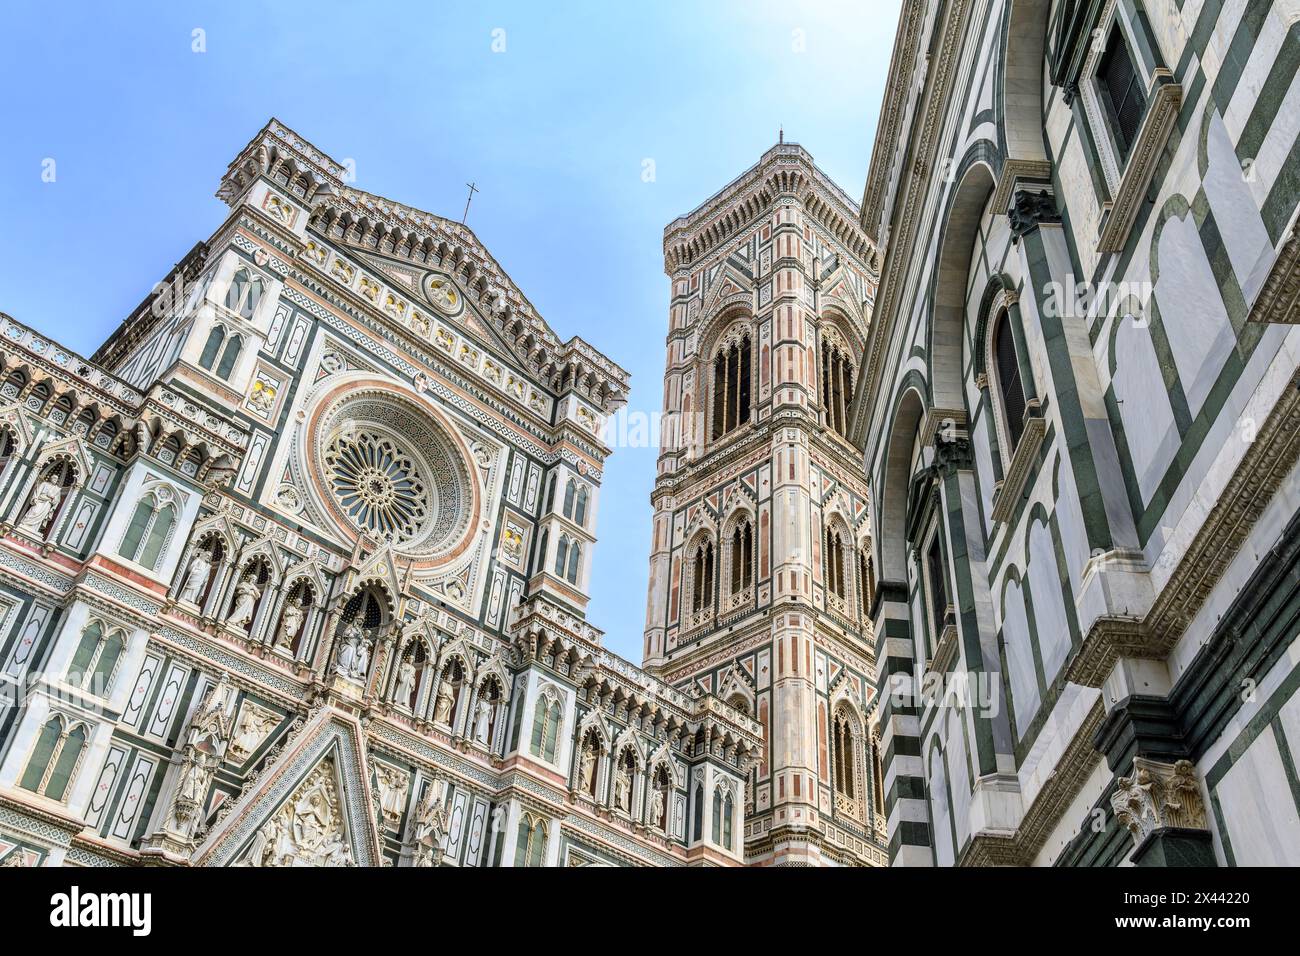 La spettacolare Cattedrale di Santa Maria del Fiore è probabilmente l'edificio più iconico nel centro di Firenze. Davvero mozzafiato! Foto Stock